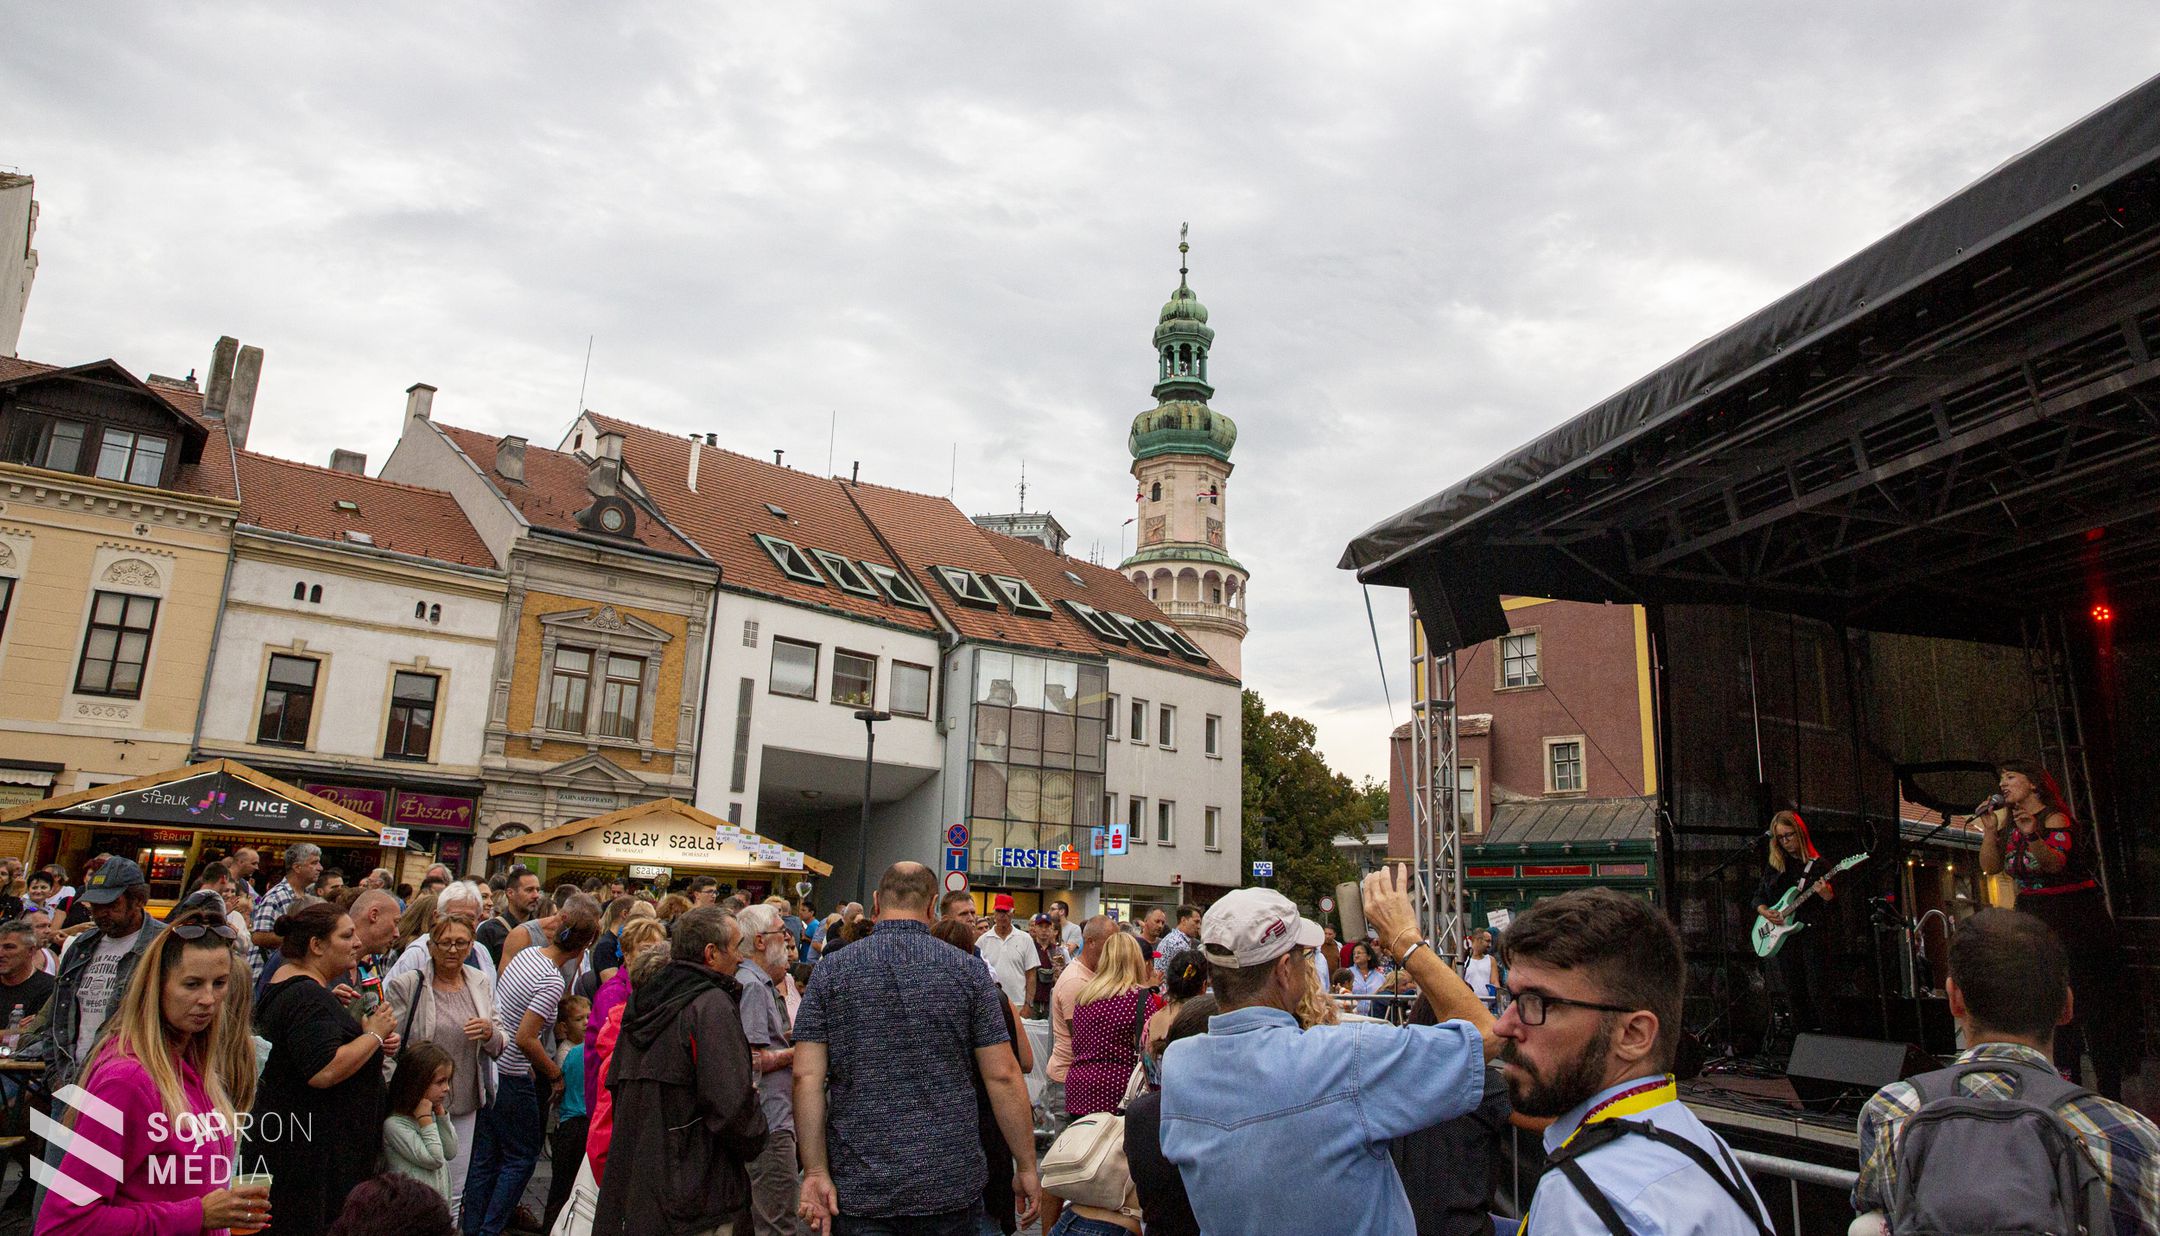 Soproni Piknik - sok érdeklődőt vonz a rendezvény - képriport